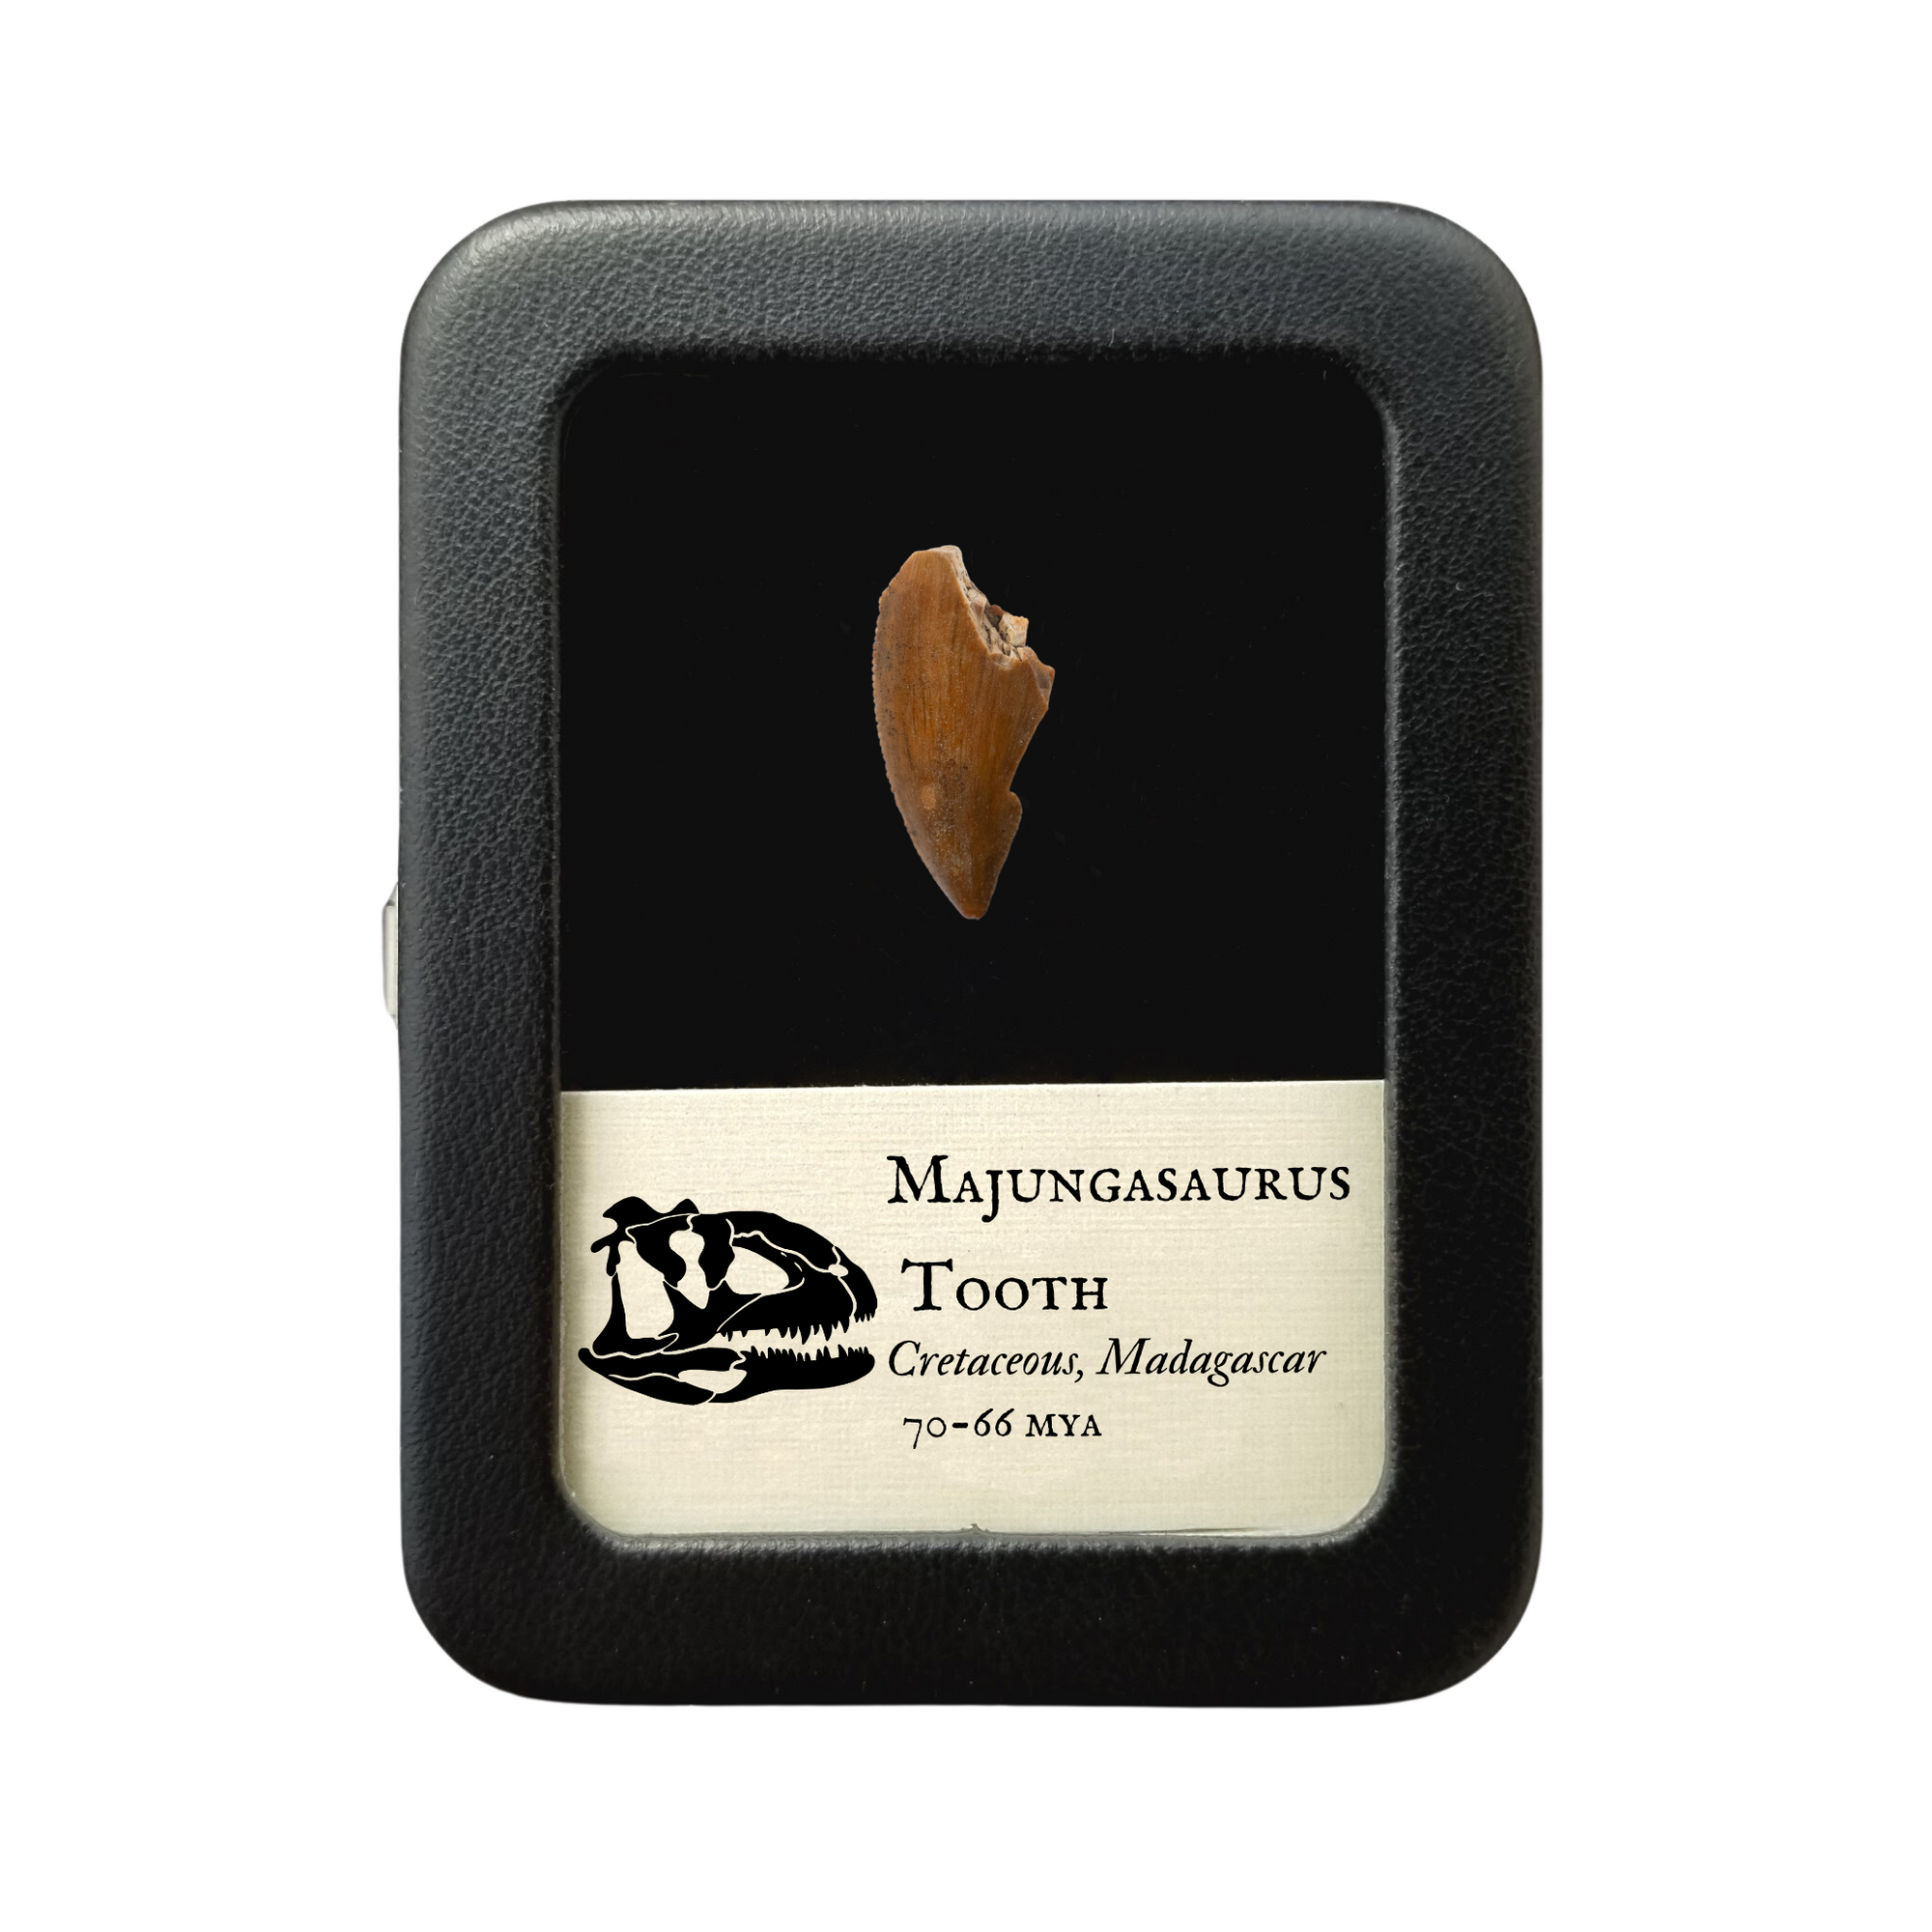 Majungasaurus Tooth 27mm - Cretaceous Period - 70 to 66 MYA - Madagascar